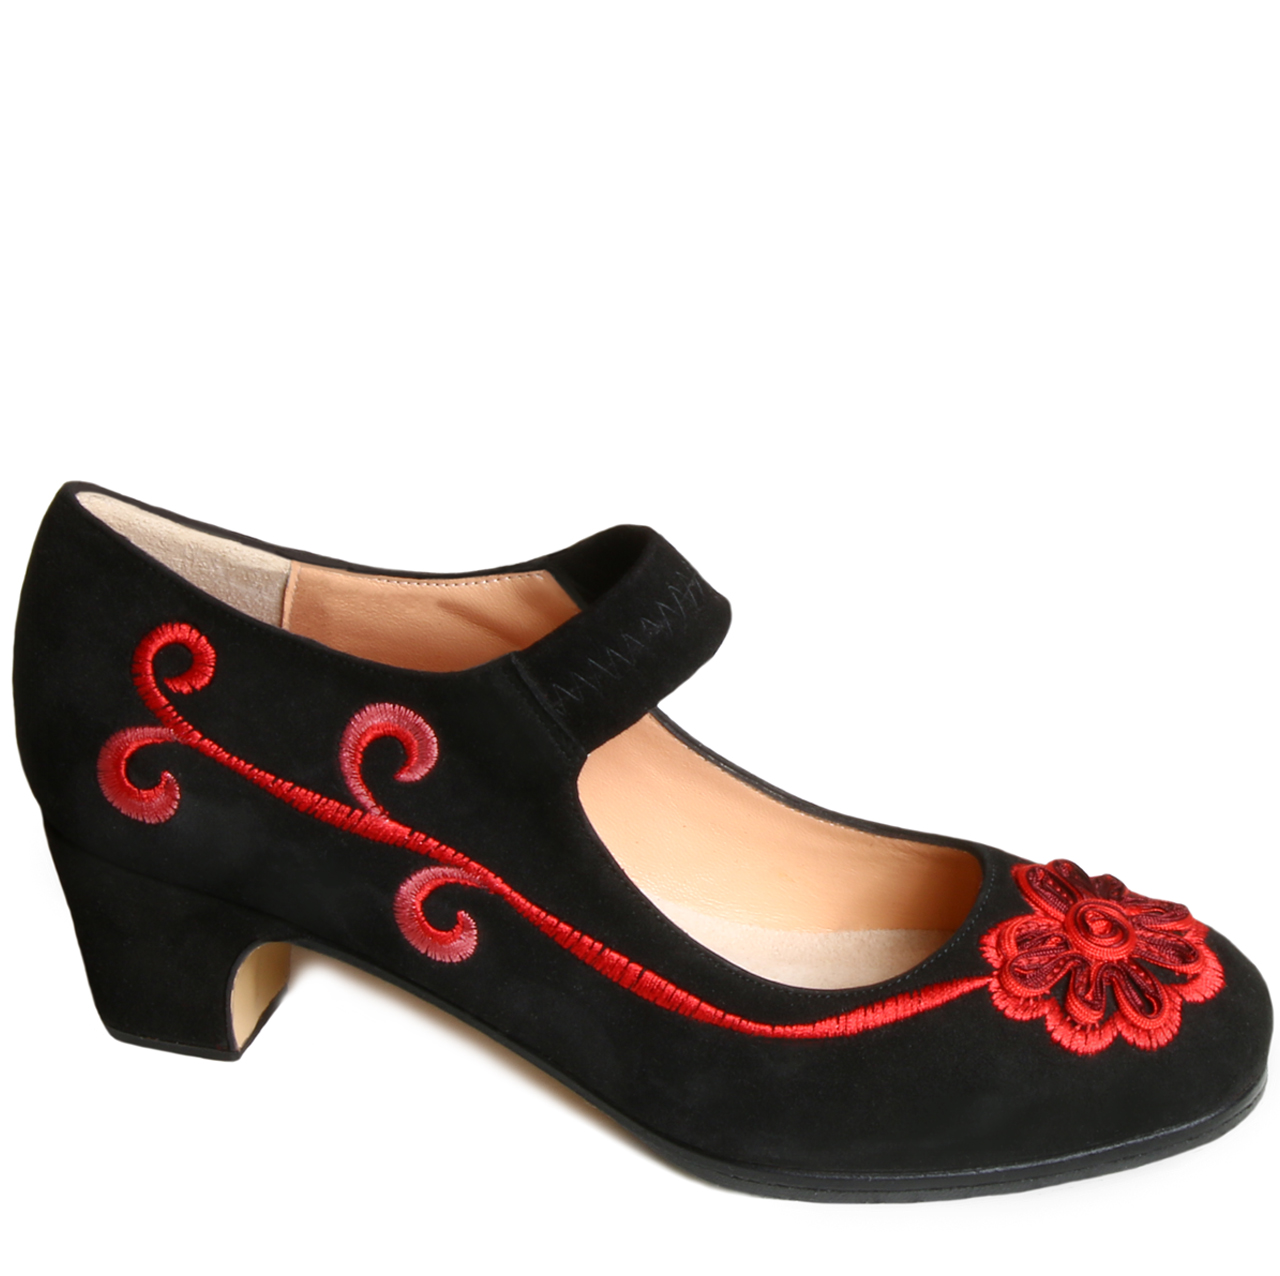 flamenco shoes usa